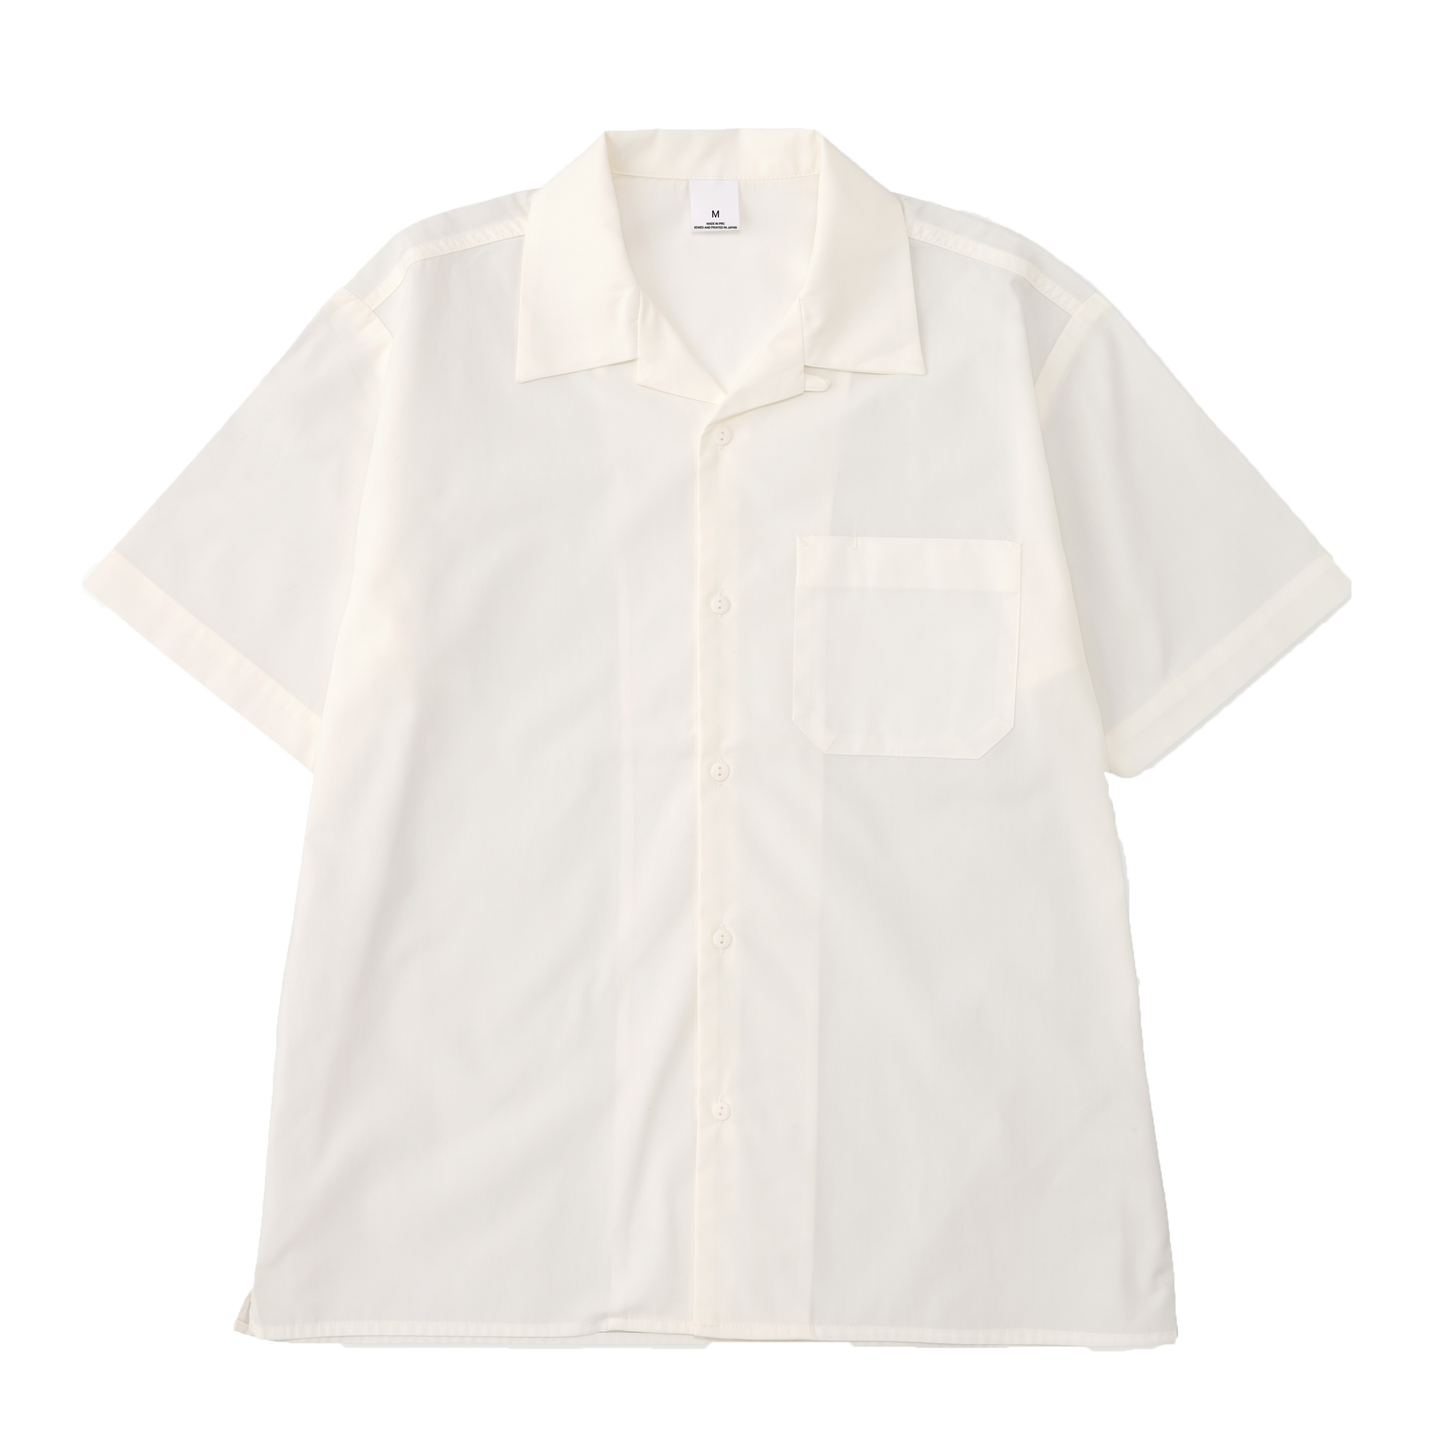 TANOTI Apparel Col. / Open collar shirt